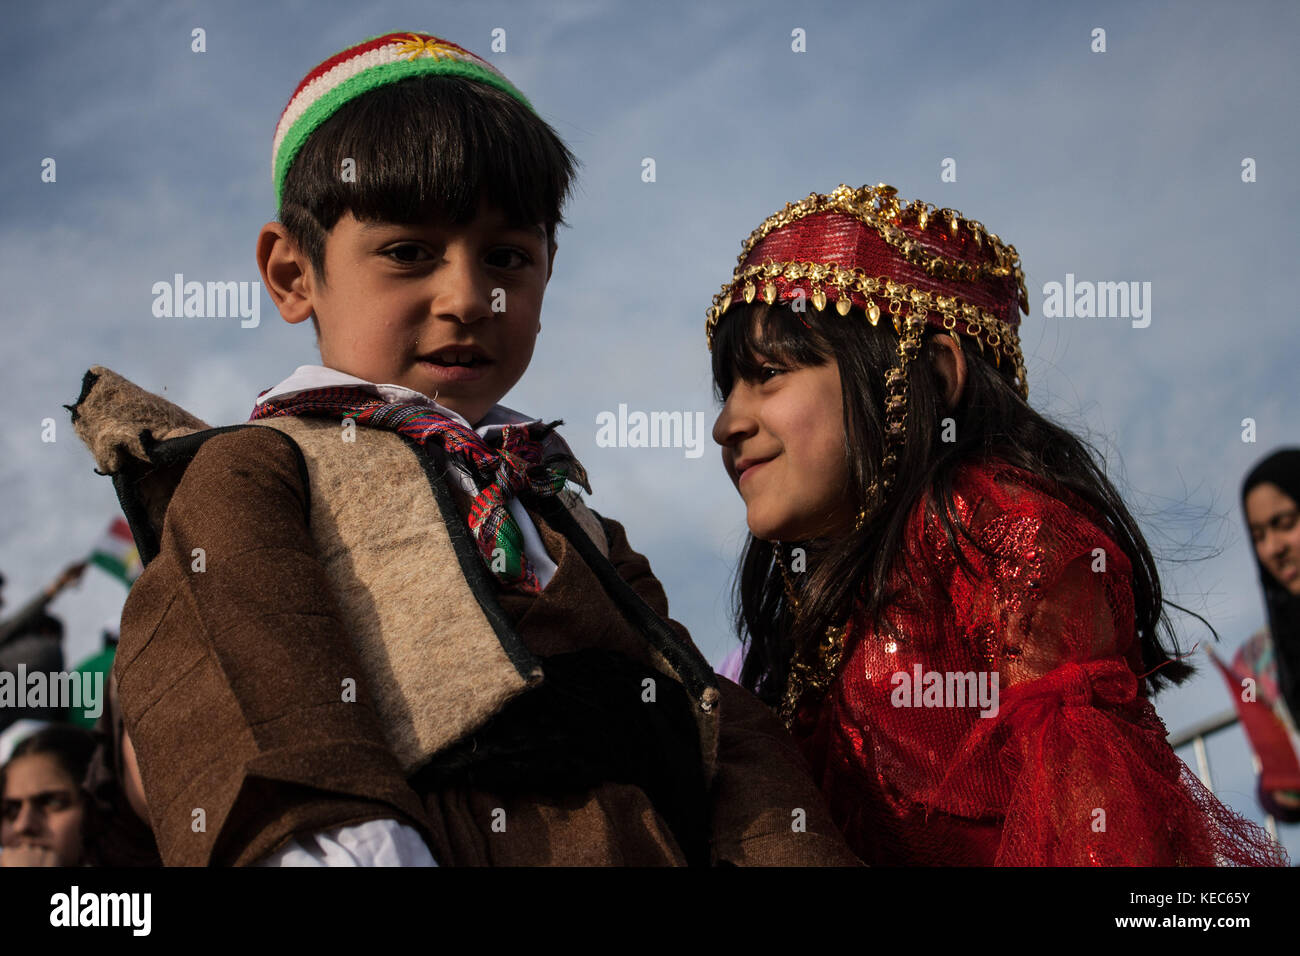 Erbil, Kurdistan, Irak. März 2011. Kurdische Kinder werden während des  Nowruz-Festivals in traditioneller Kleidung gesehen.Nowruz bedeutet "neuer  Tag, Tageslicht", ist das traditionelle kurdische Neujahr-Fest, das Kurden  feiern, indem sie Gruppentanz ...